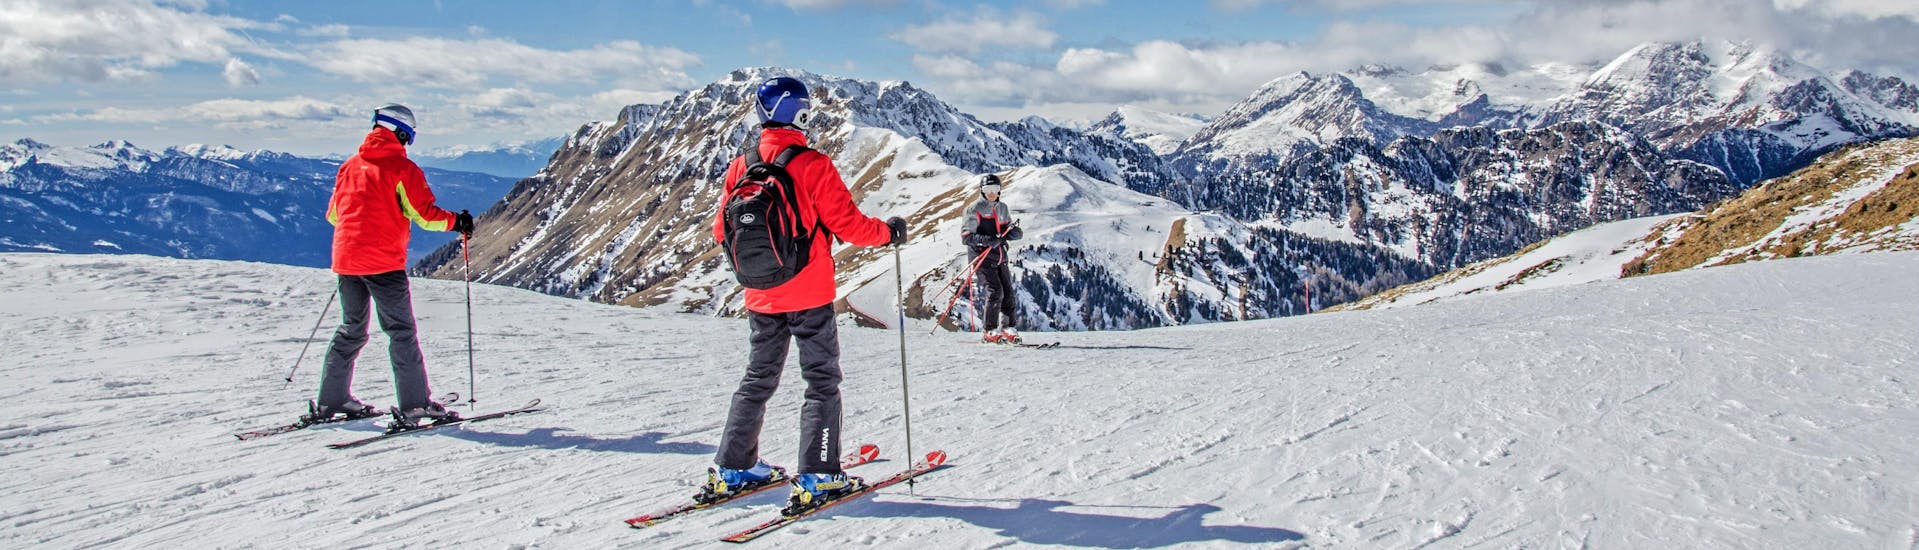 Skifahrer auf dem Gipfel der Berge mit Blick auf das Skigebiet.